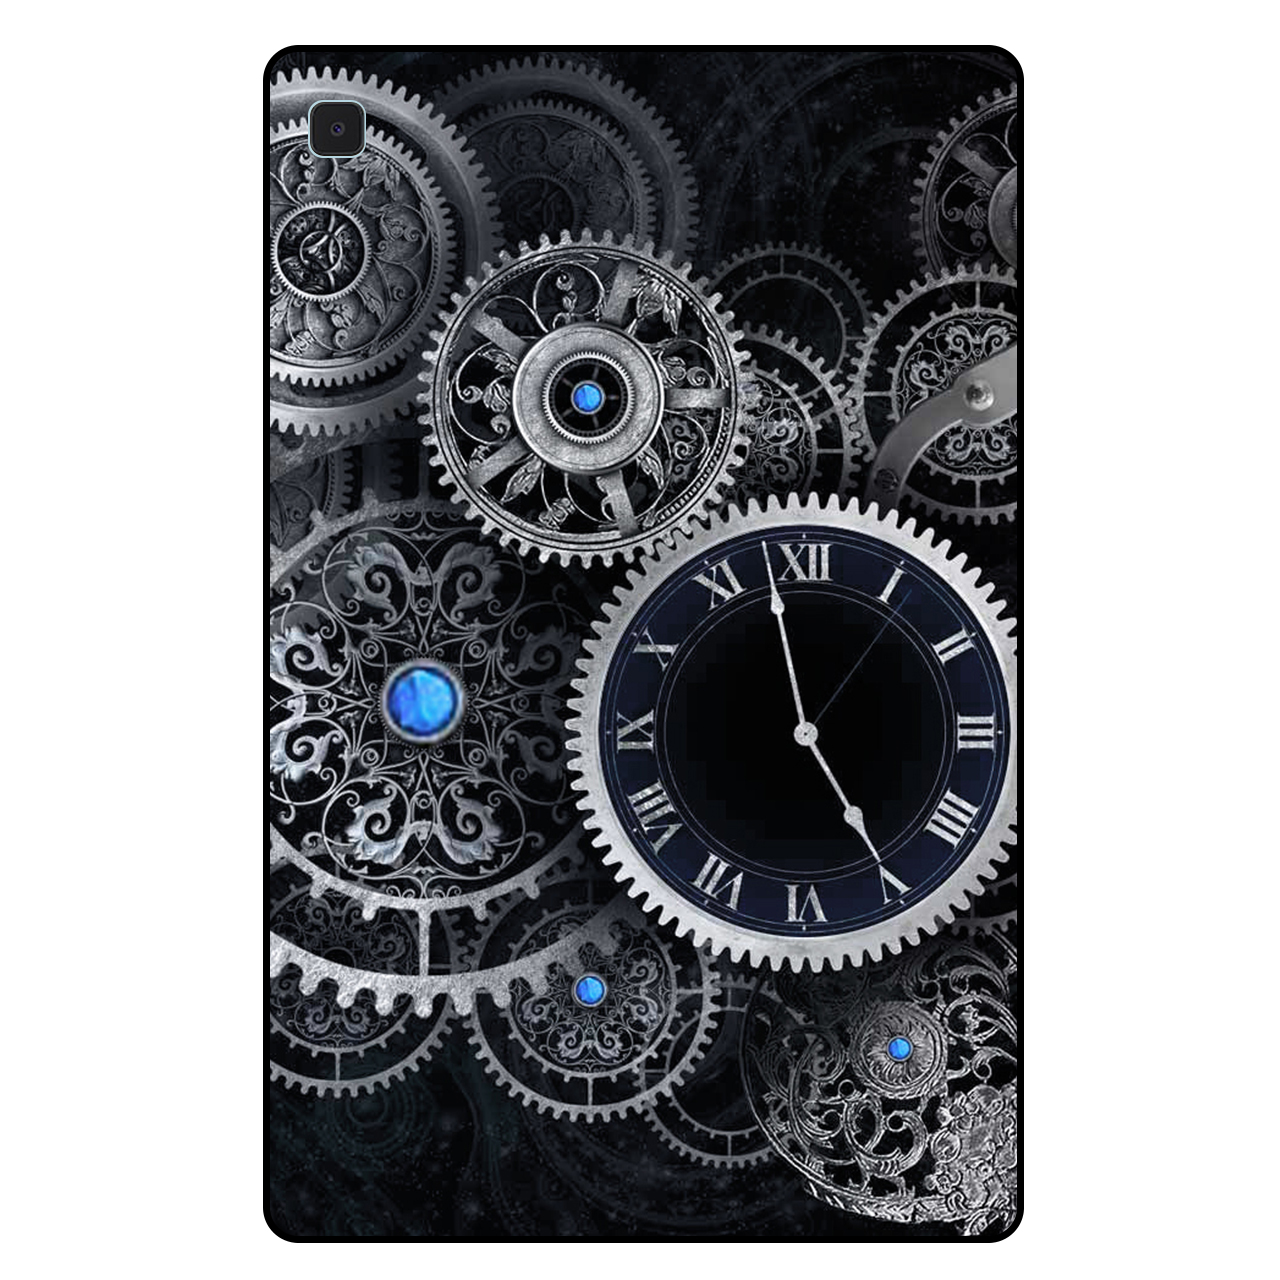 کاور مگافون طرح ساعت مدل 7741 مناسب برای تبلت سامسونگ Galaxy Tab S6 Lite 10.4 2020 / P610 / P615